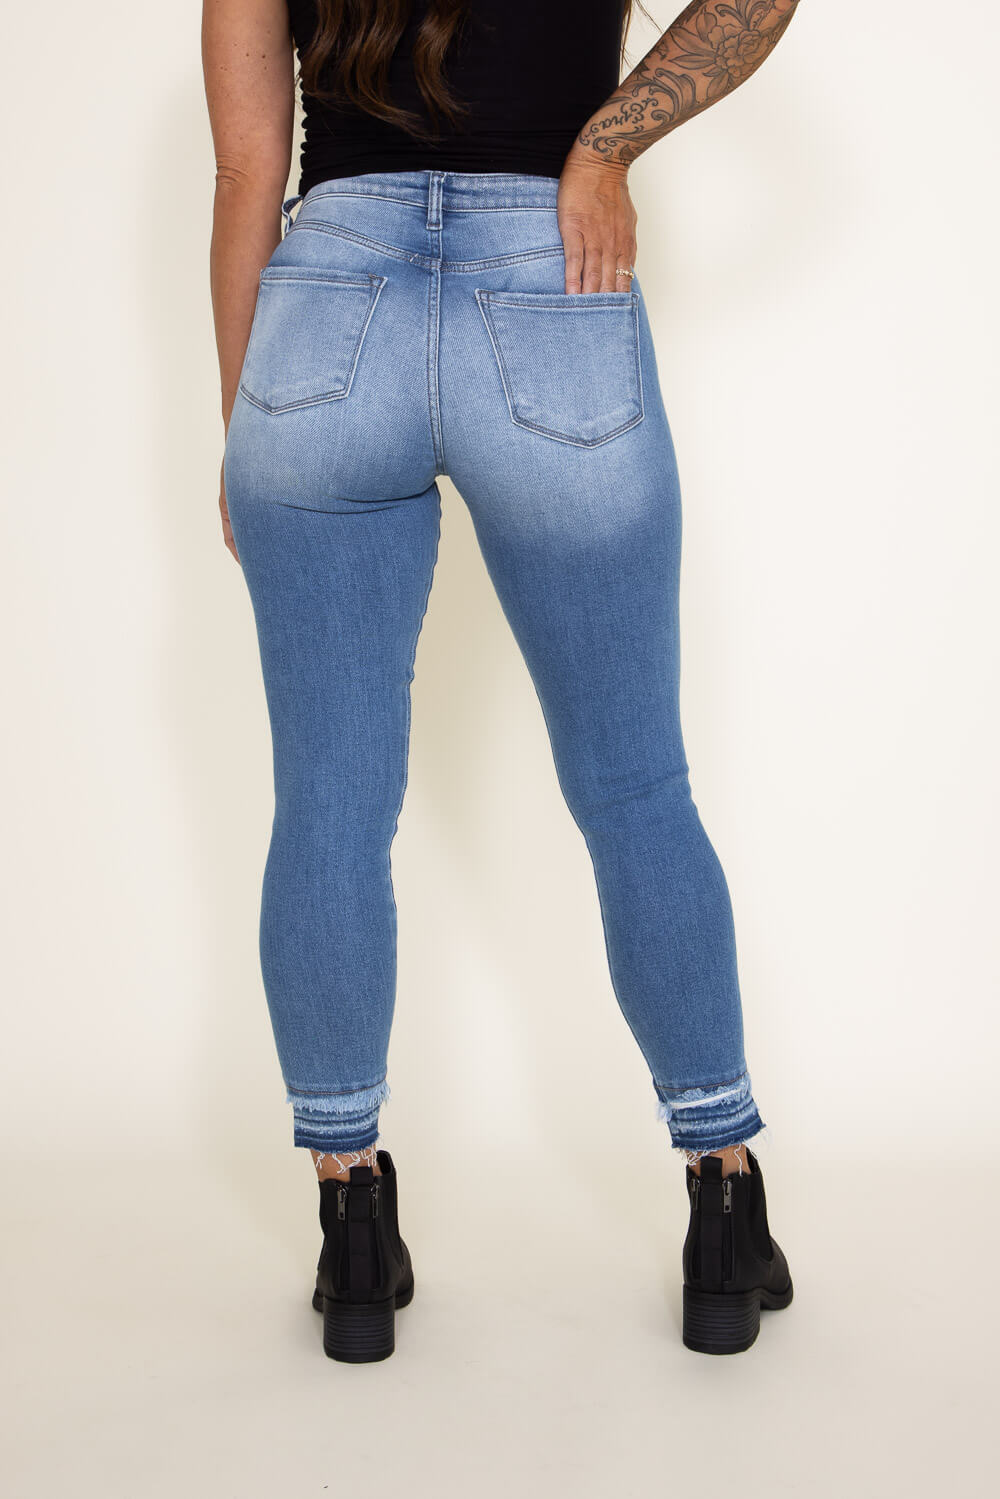 https://www.gliks.com/cdn/shop/files/005-KanCan-High-Rise-Frayed-Hem-Skinny-Jeans-for-Women-KC9257M.jpg?v=1692886187